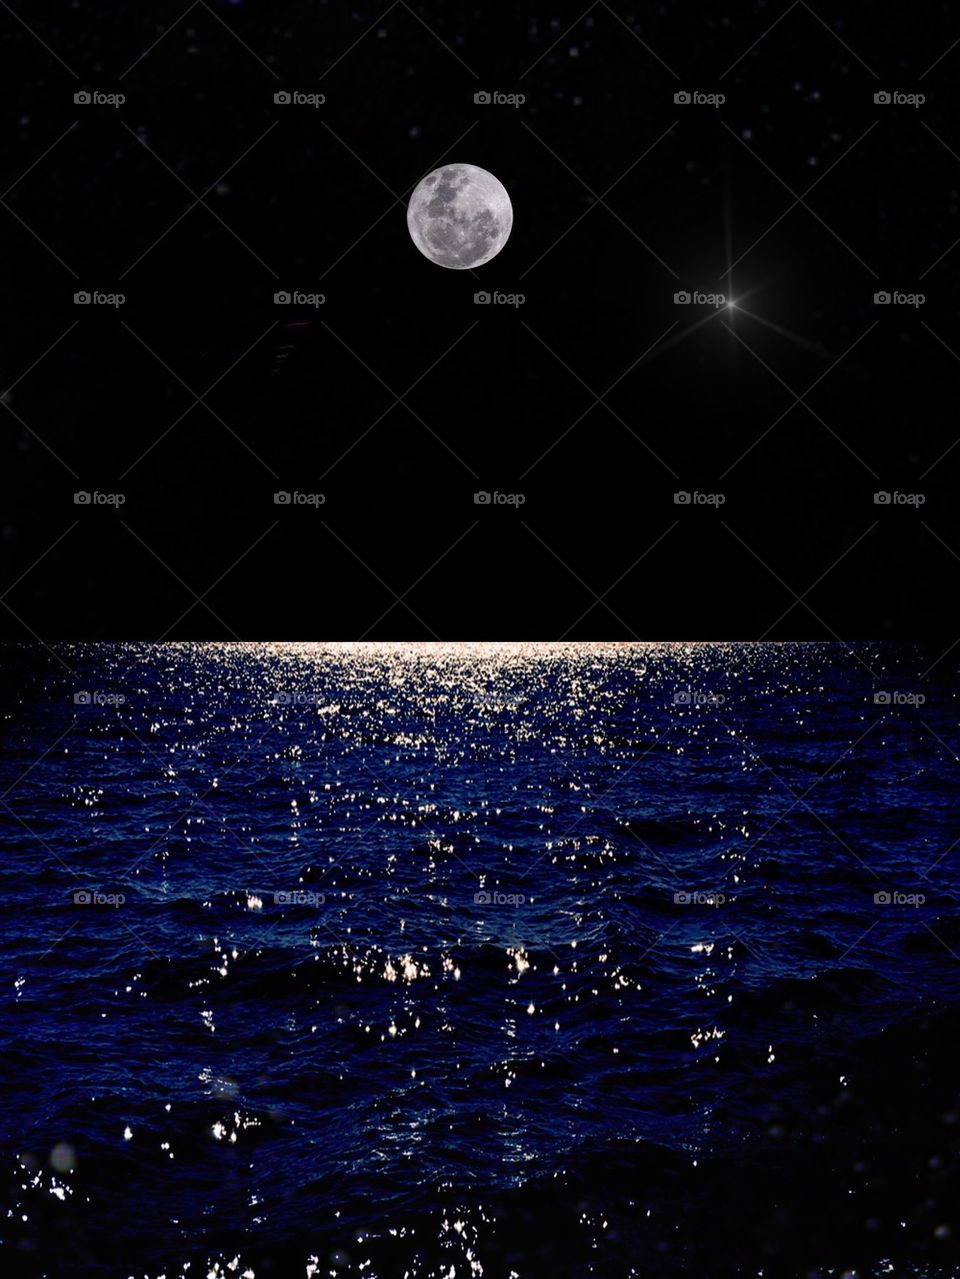 Moonlight over the ocean. Moonlight over the ocean